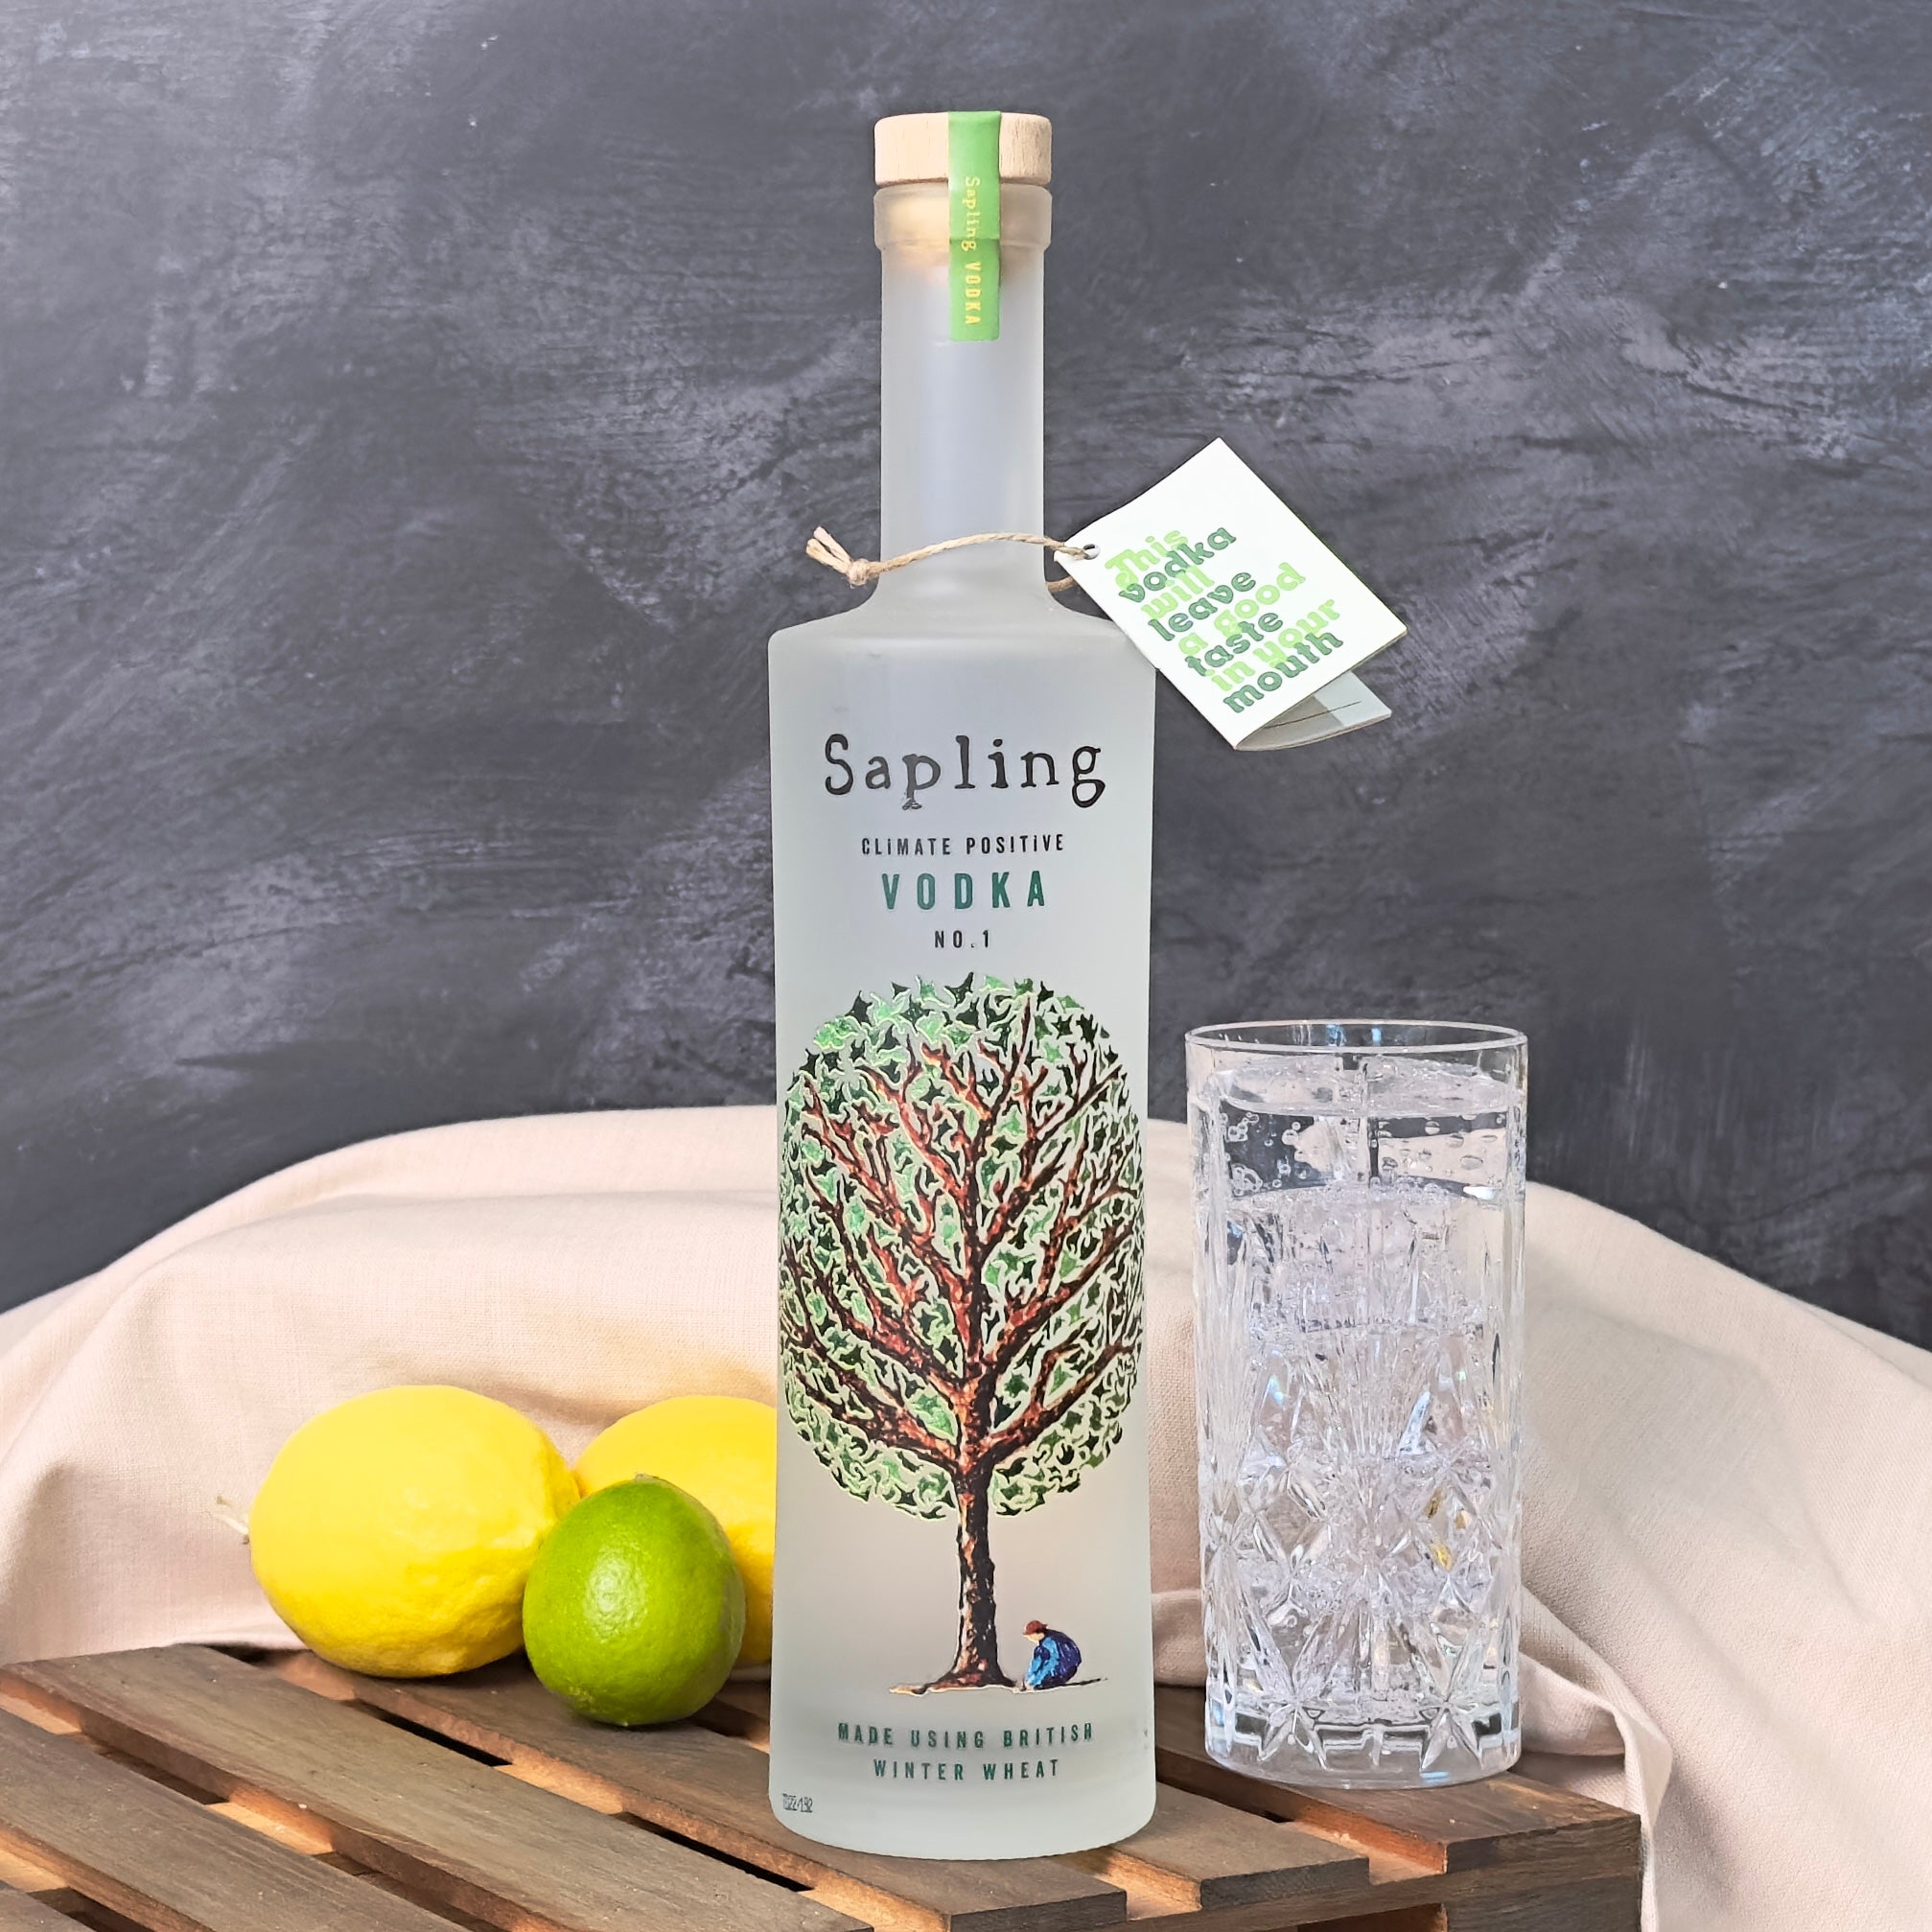 The Sapling Vodka Gift Box